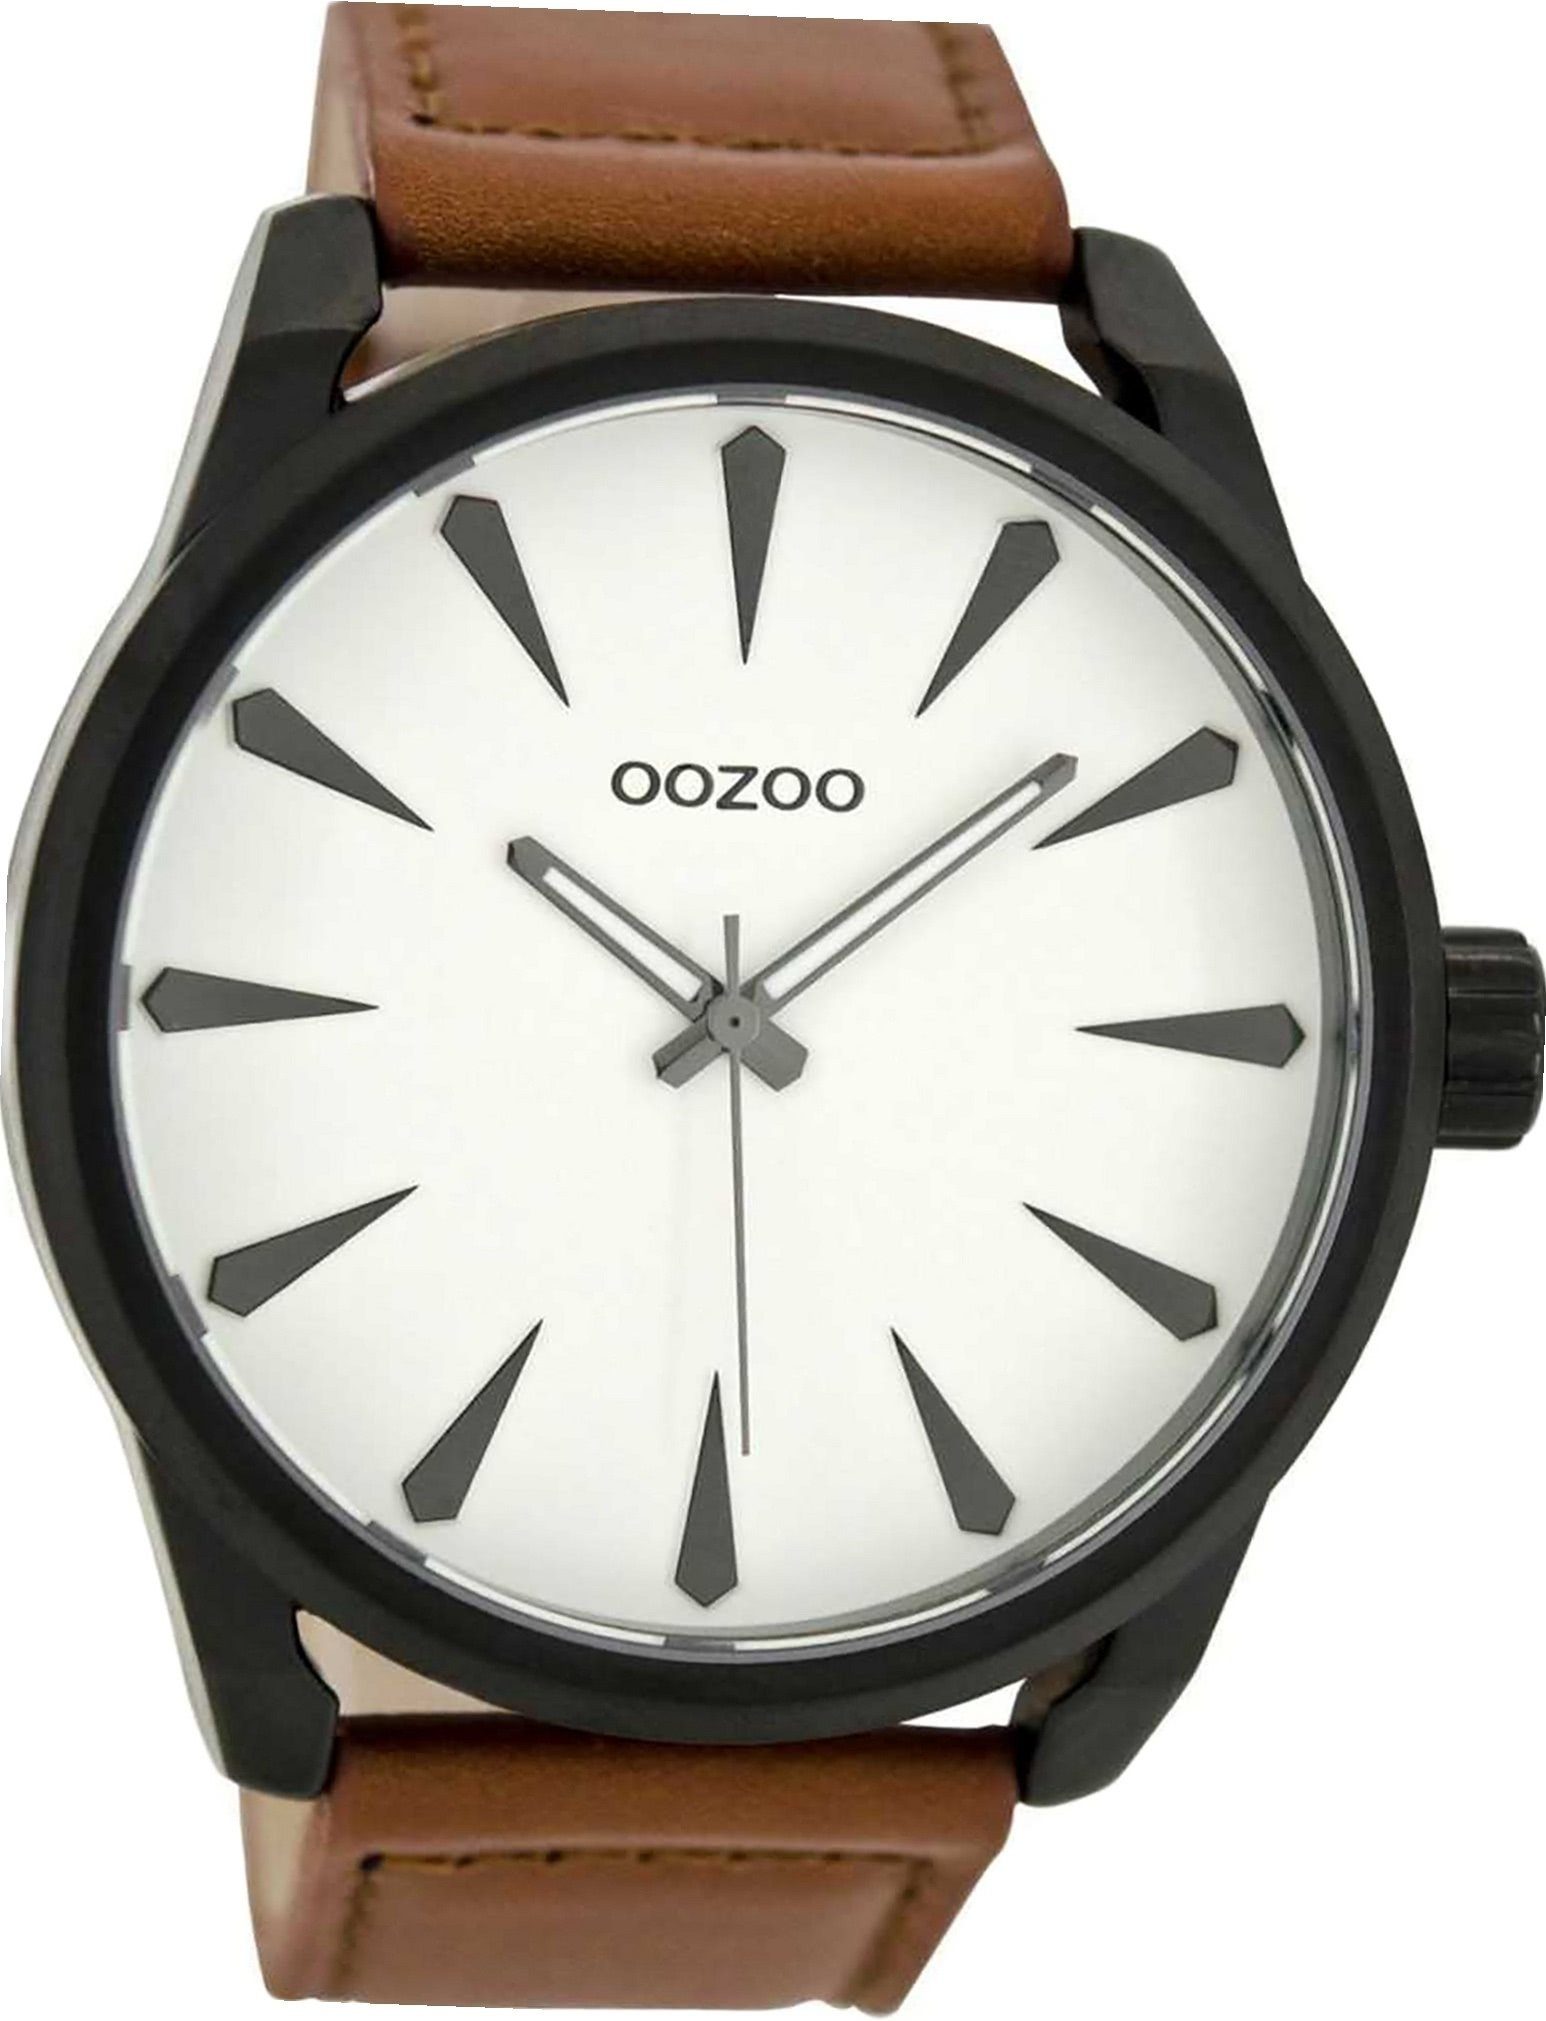 OOZOO Quarzuhr Oozoo Leder Herren extra (ca. 48mm) C8226 rundes Uhr Gehäuse, Analog, Lederarmband groß braun, Herrenuhr